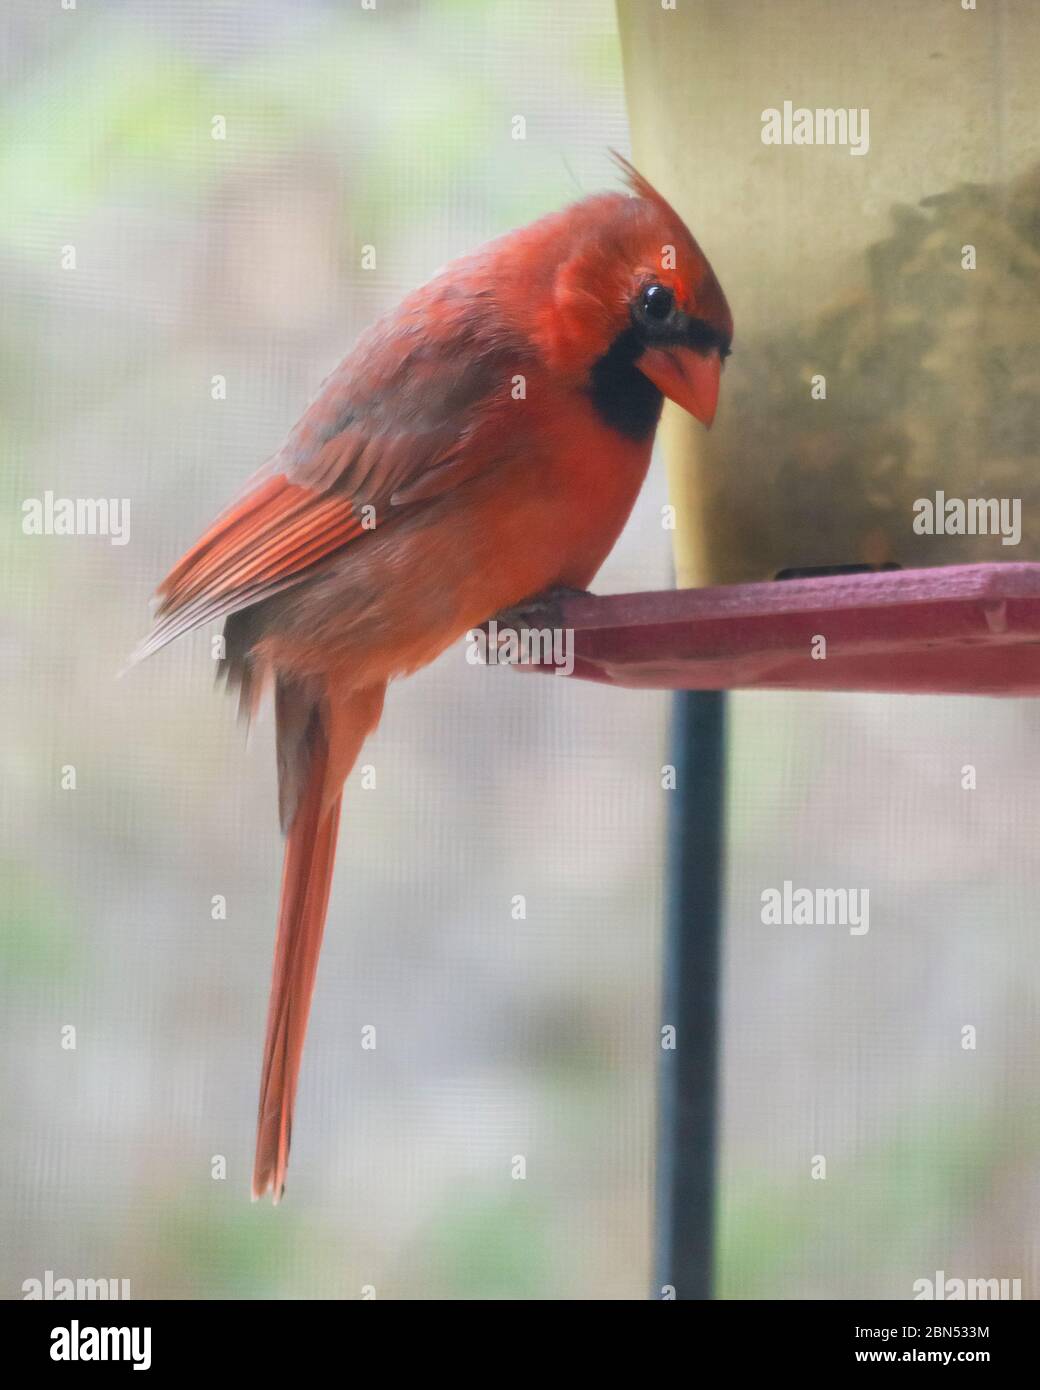 Männlich Northern Cardinal thront am Vogelfutterhäuschen mit Kopf gespannt Blick auf die Kamera. Hintergrund verschwommen. Aufgenommen im Frühjahr. Stockfoto